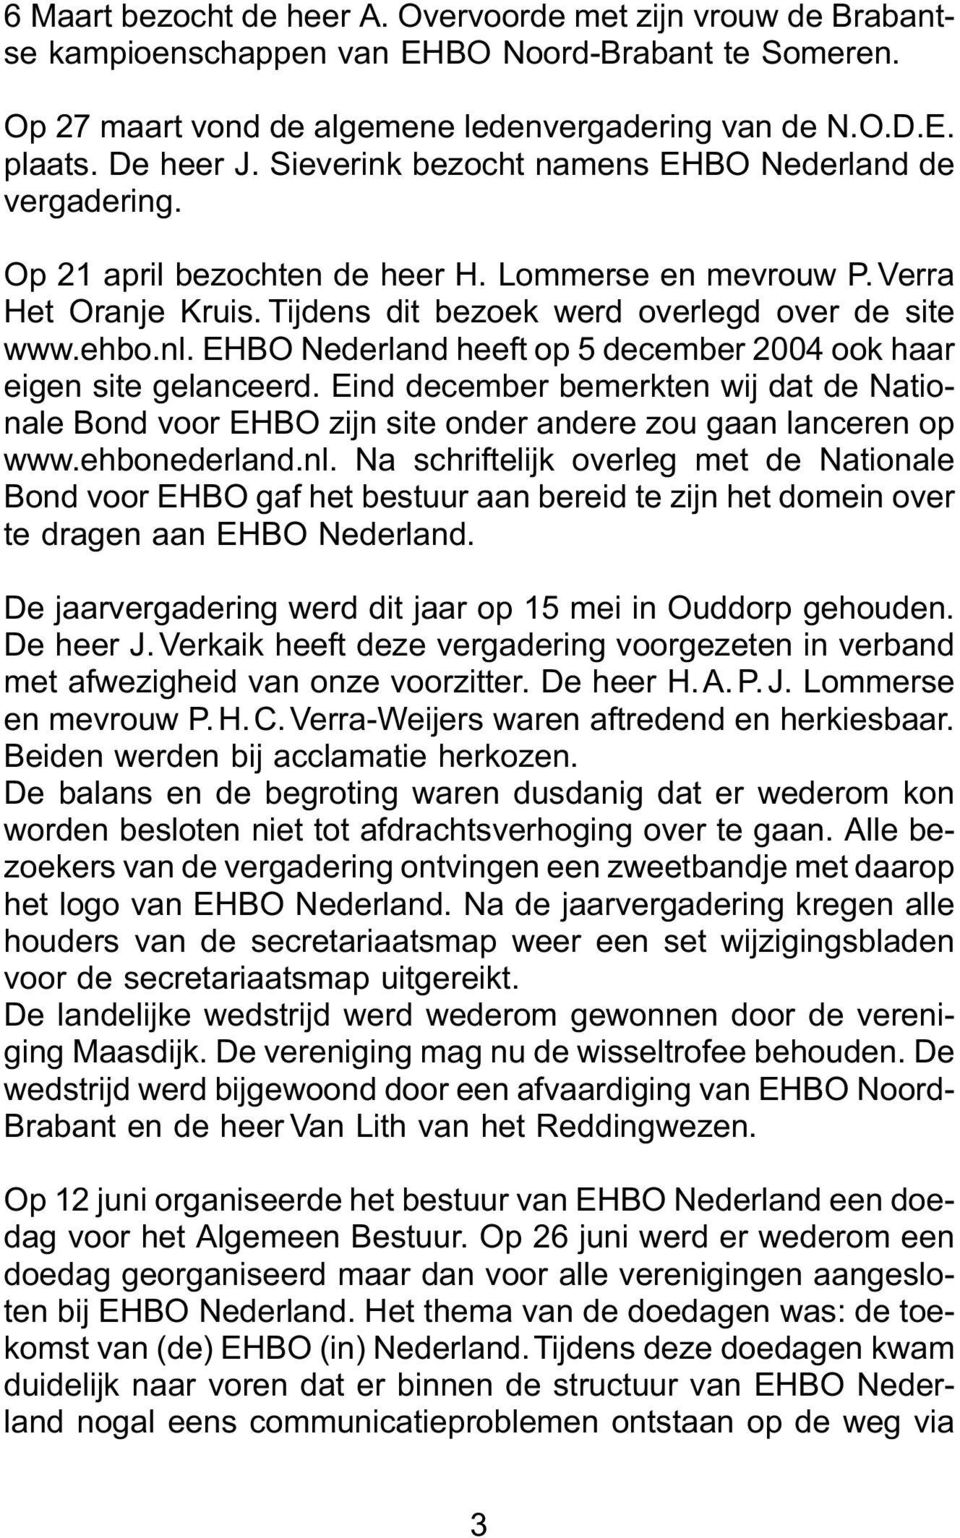 EHBO Nederland heeft op 5 december 2004 ook haar eigen site gelanceerd. Eind december bemerkten wij dat de Nationale Bond voor EHBO zijn site onder andere zou gaan lanceren op www.ehbonederland.nl.